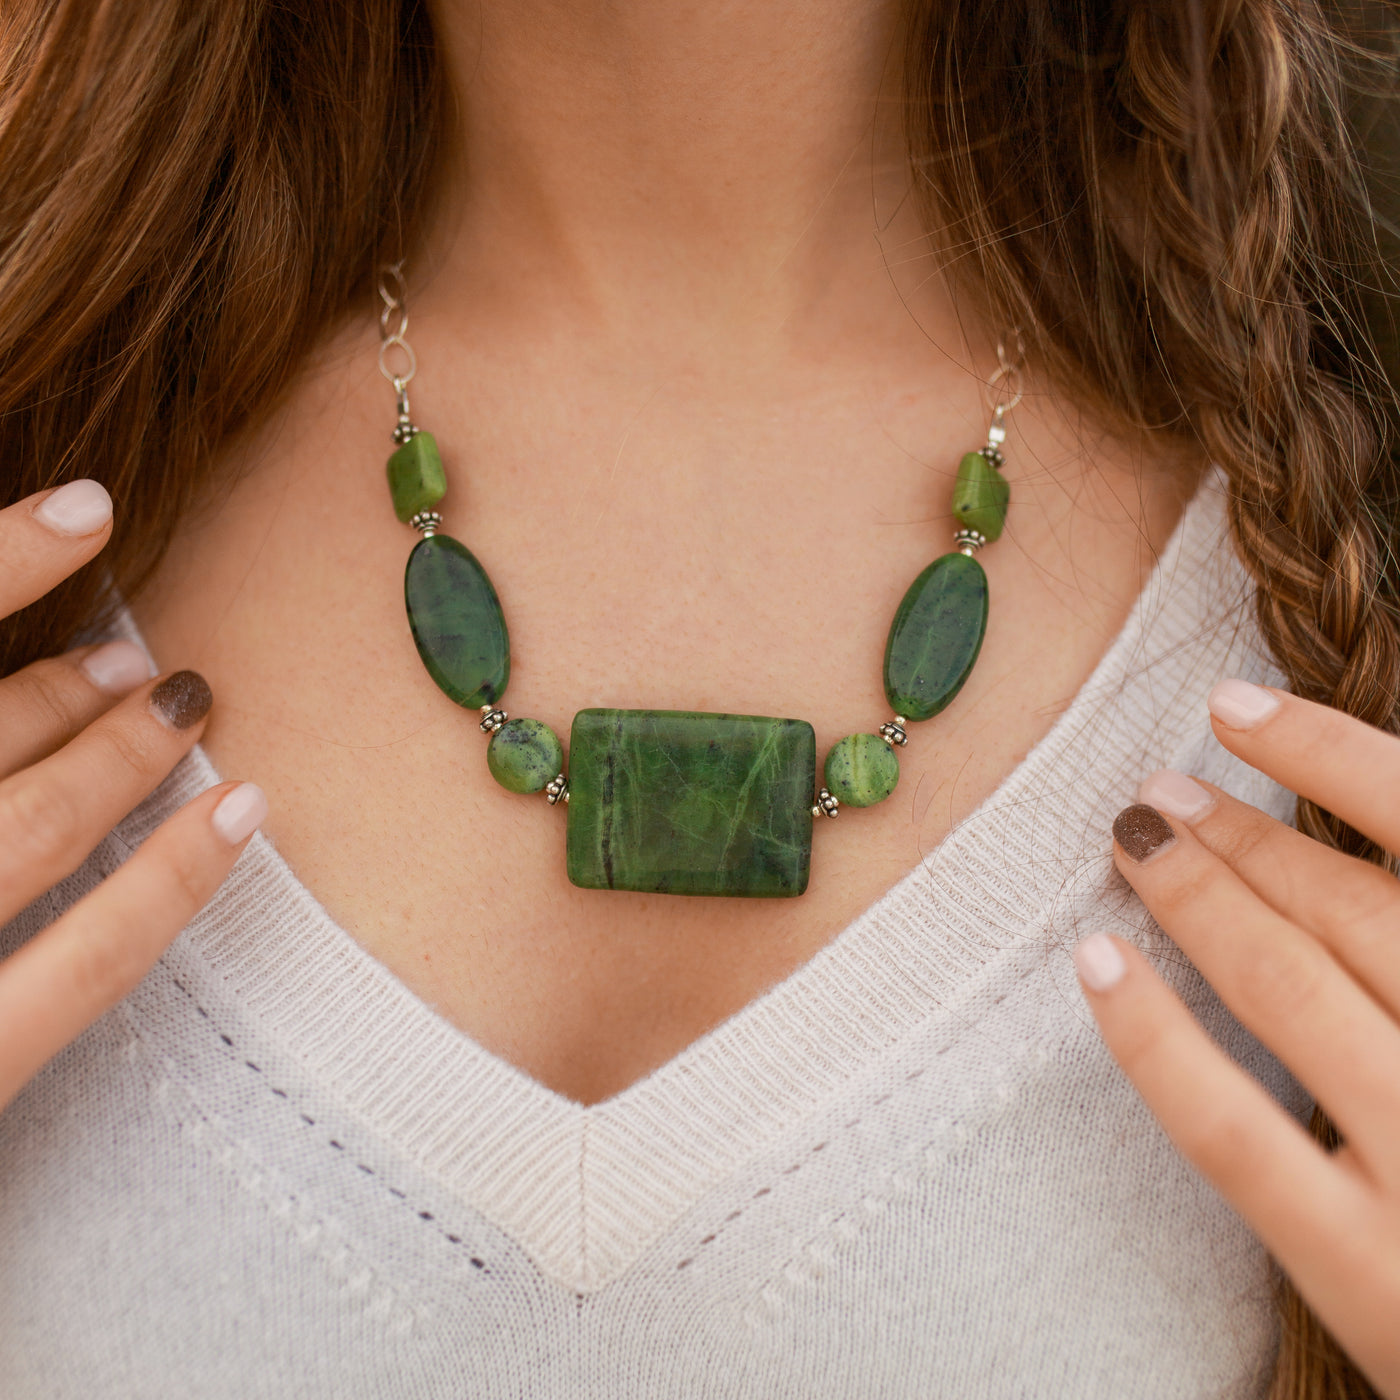 Woman Wearing Jadeite Gem Necklace